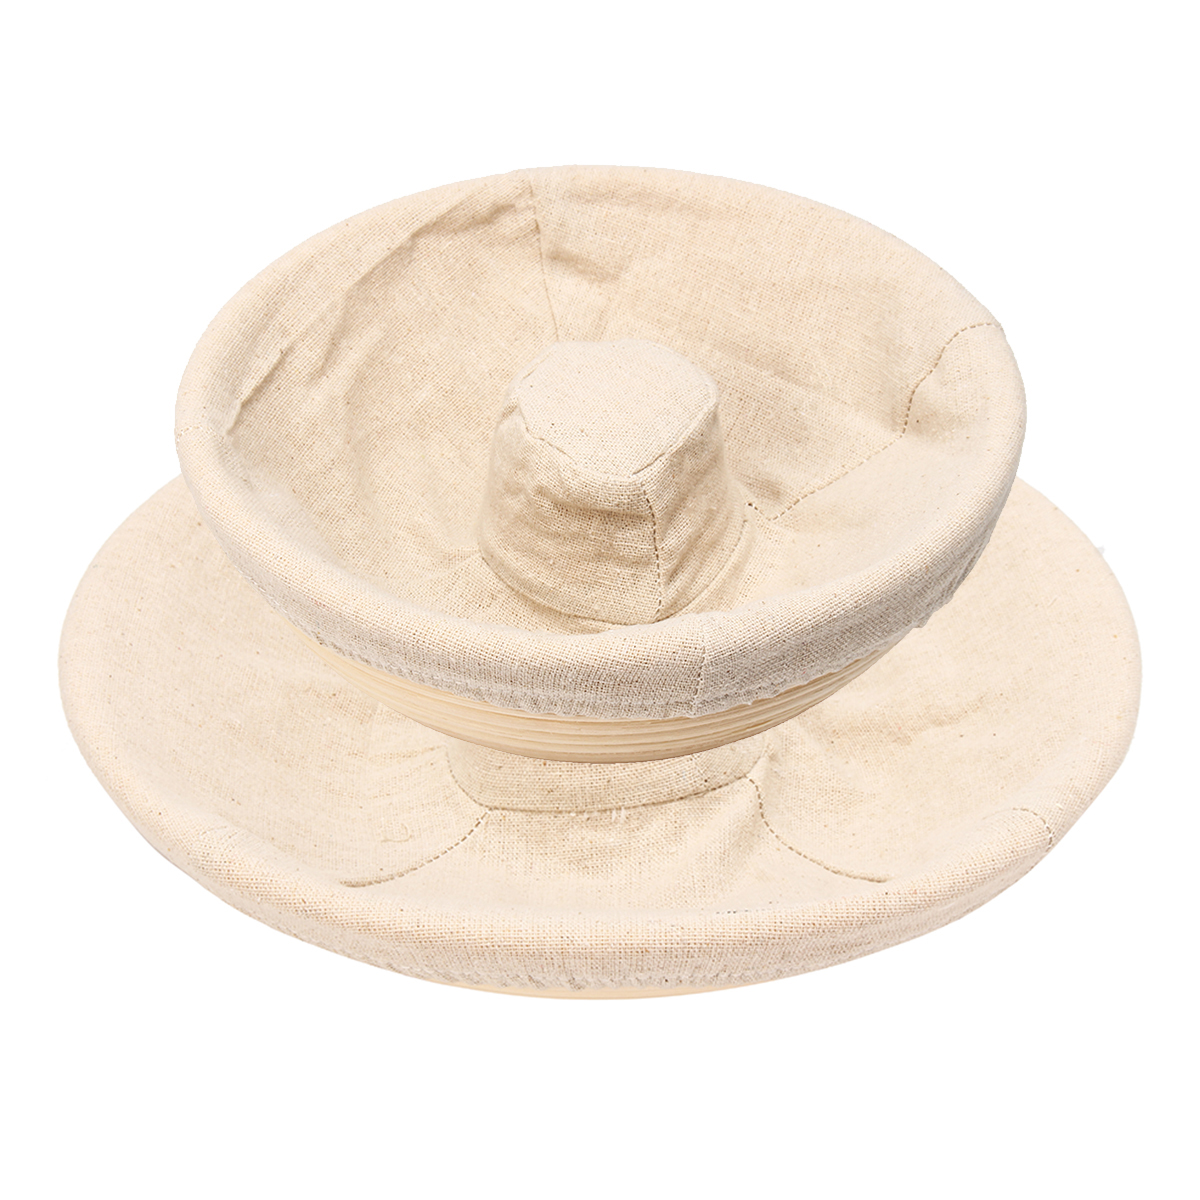 Handmade-Round-Oval-Banneton-Bortform-Rattan-Storage-Baskets-Bread-Dough-Proofing-Liner-1383037-2